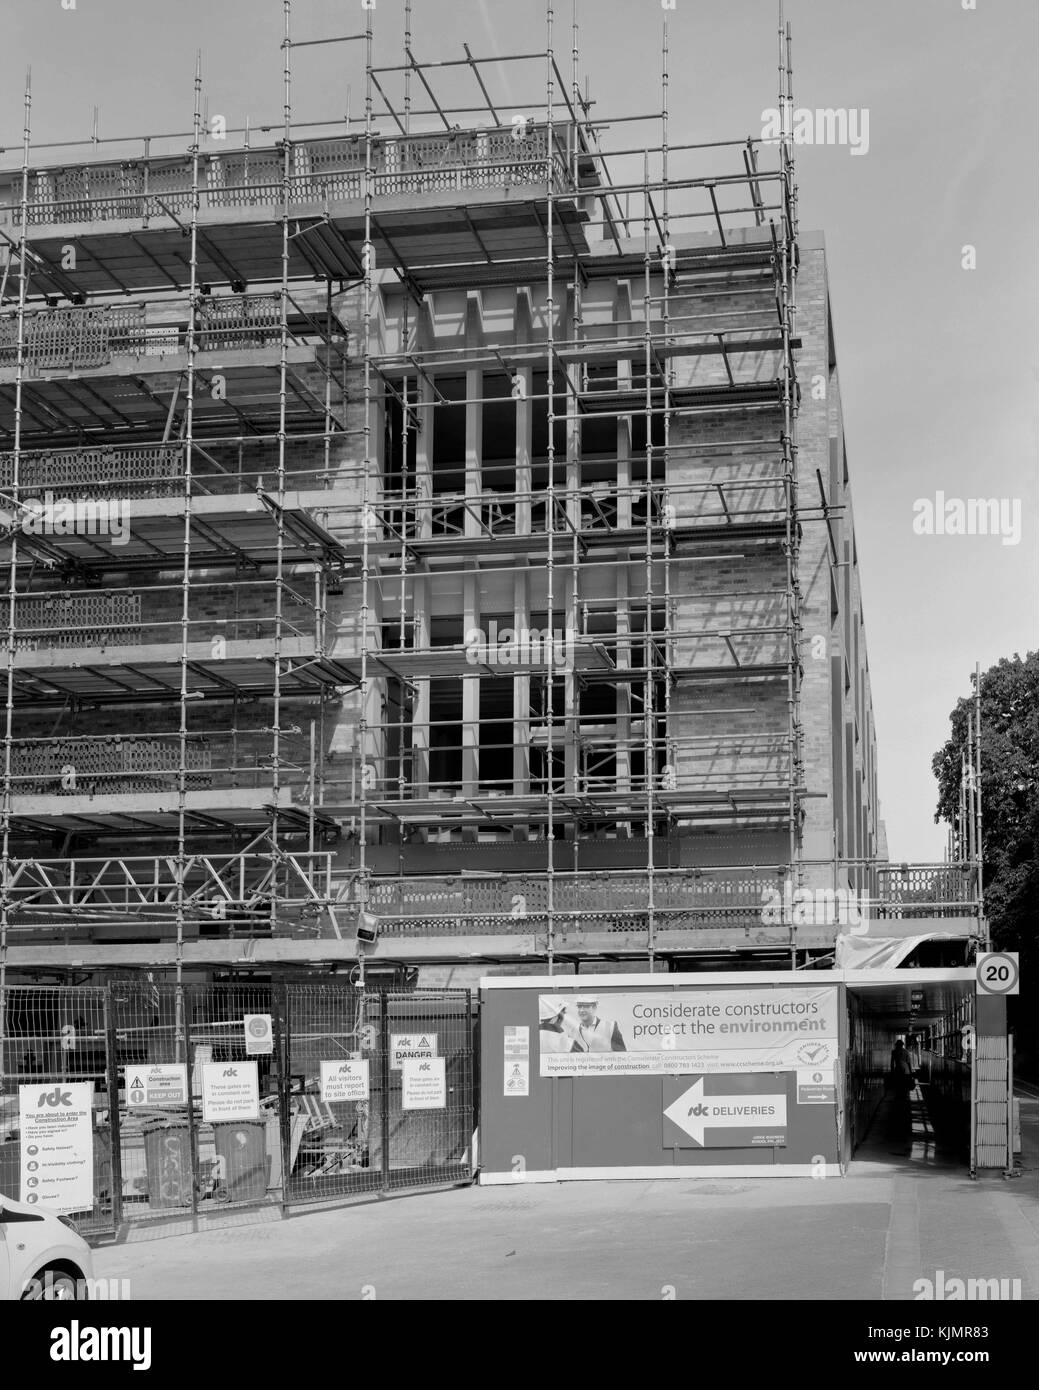 Judge Business School Projet de construction sur l'ancien site d'Addenbrooke, Cambridge Banque D'Images